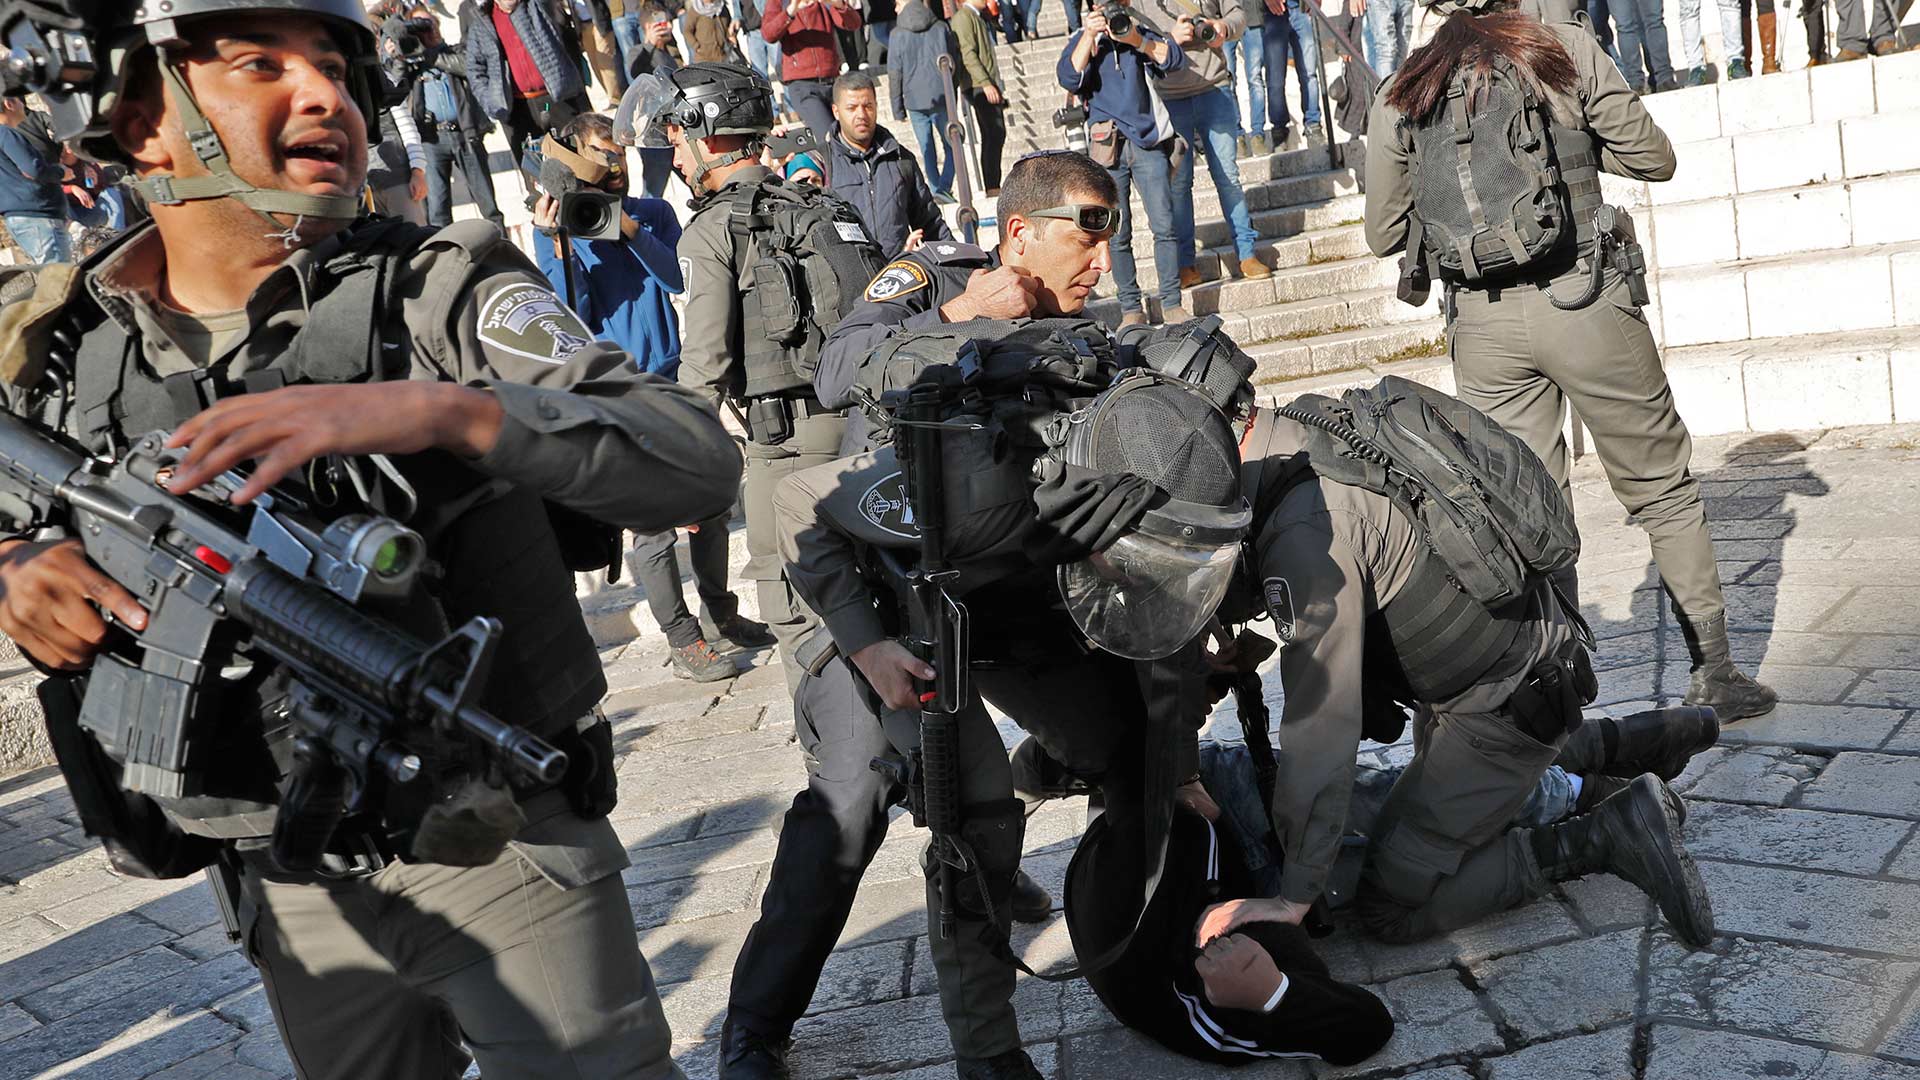 Los disturbios se suceden en Jerusalén tras la decisión de Trump de reconocerla como capital de Israel